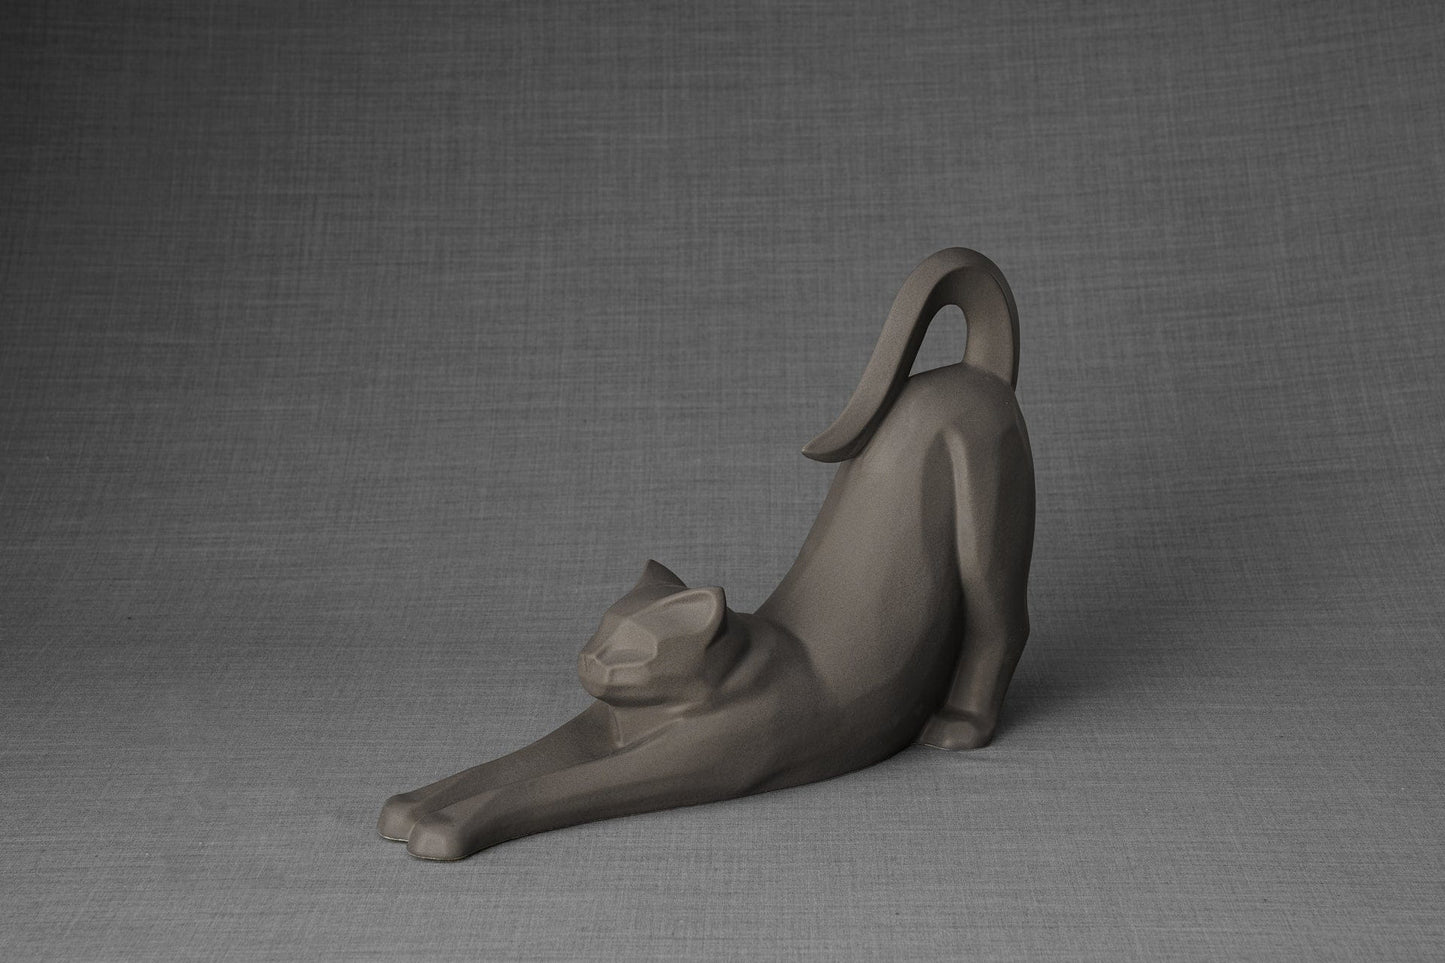 Pulvis Art Urns Pet Urn Cat Cremation Urn For Ashes "Grace" - Grey Matte | Ceramic